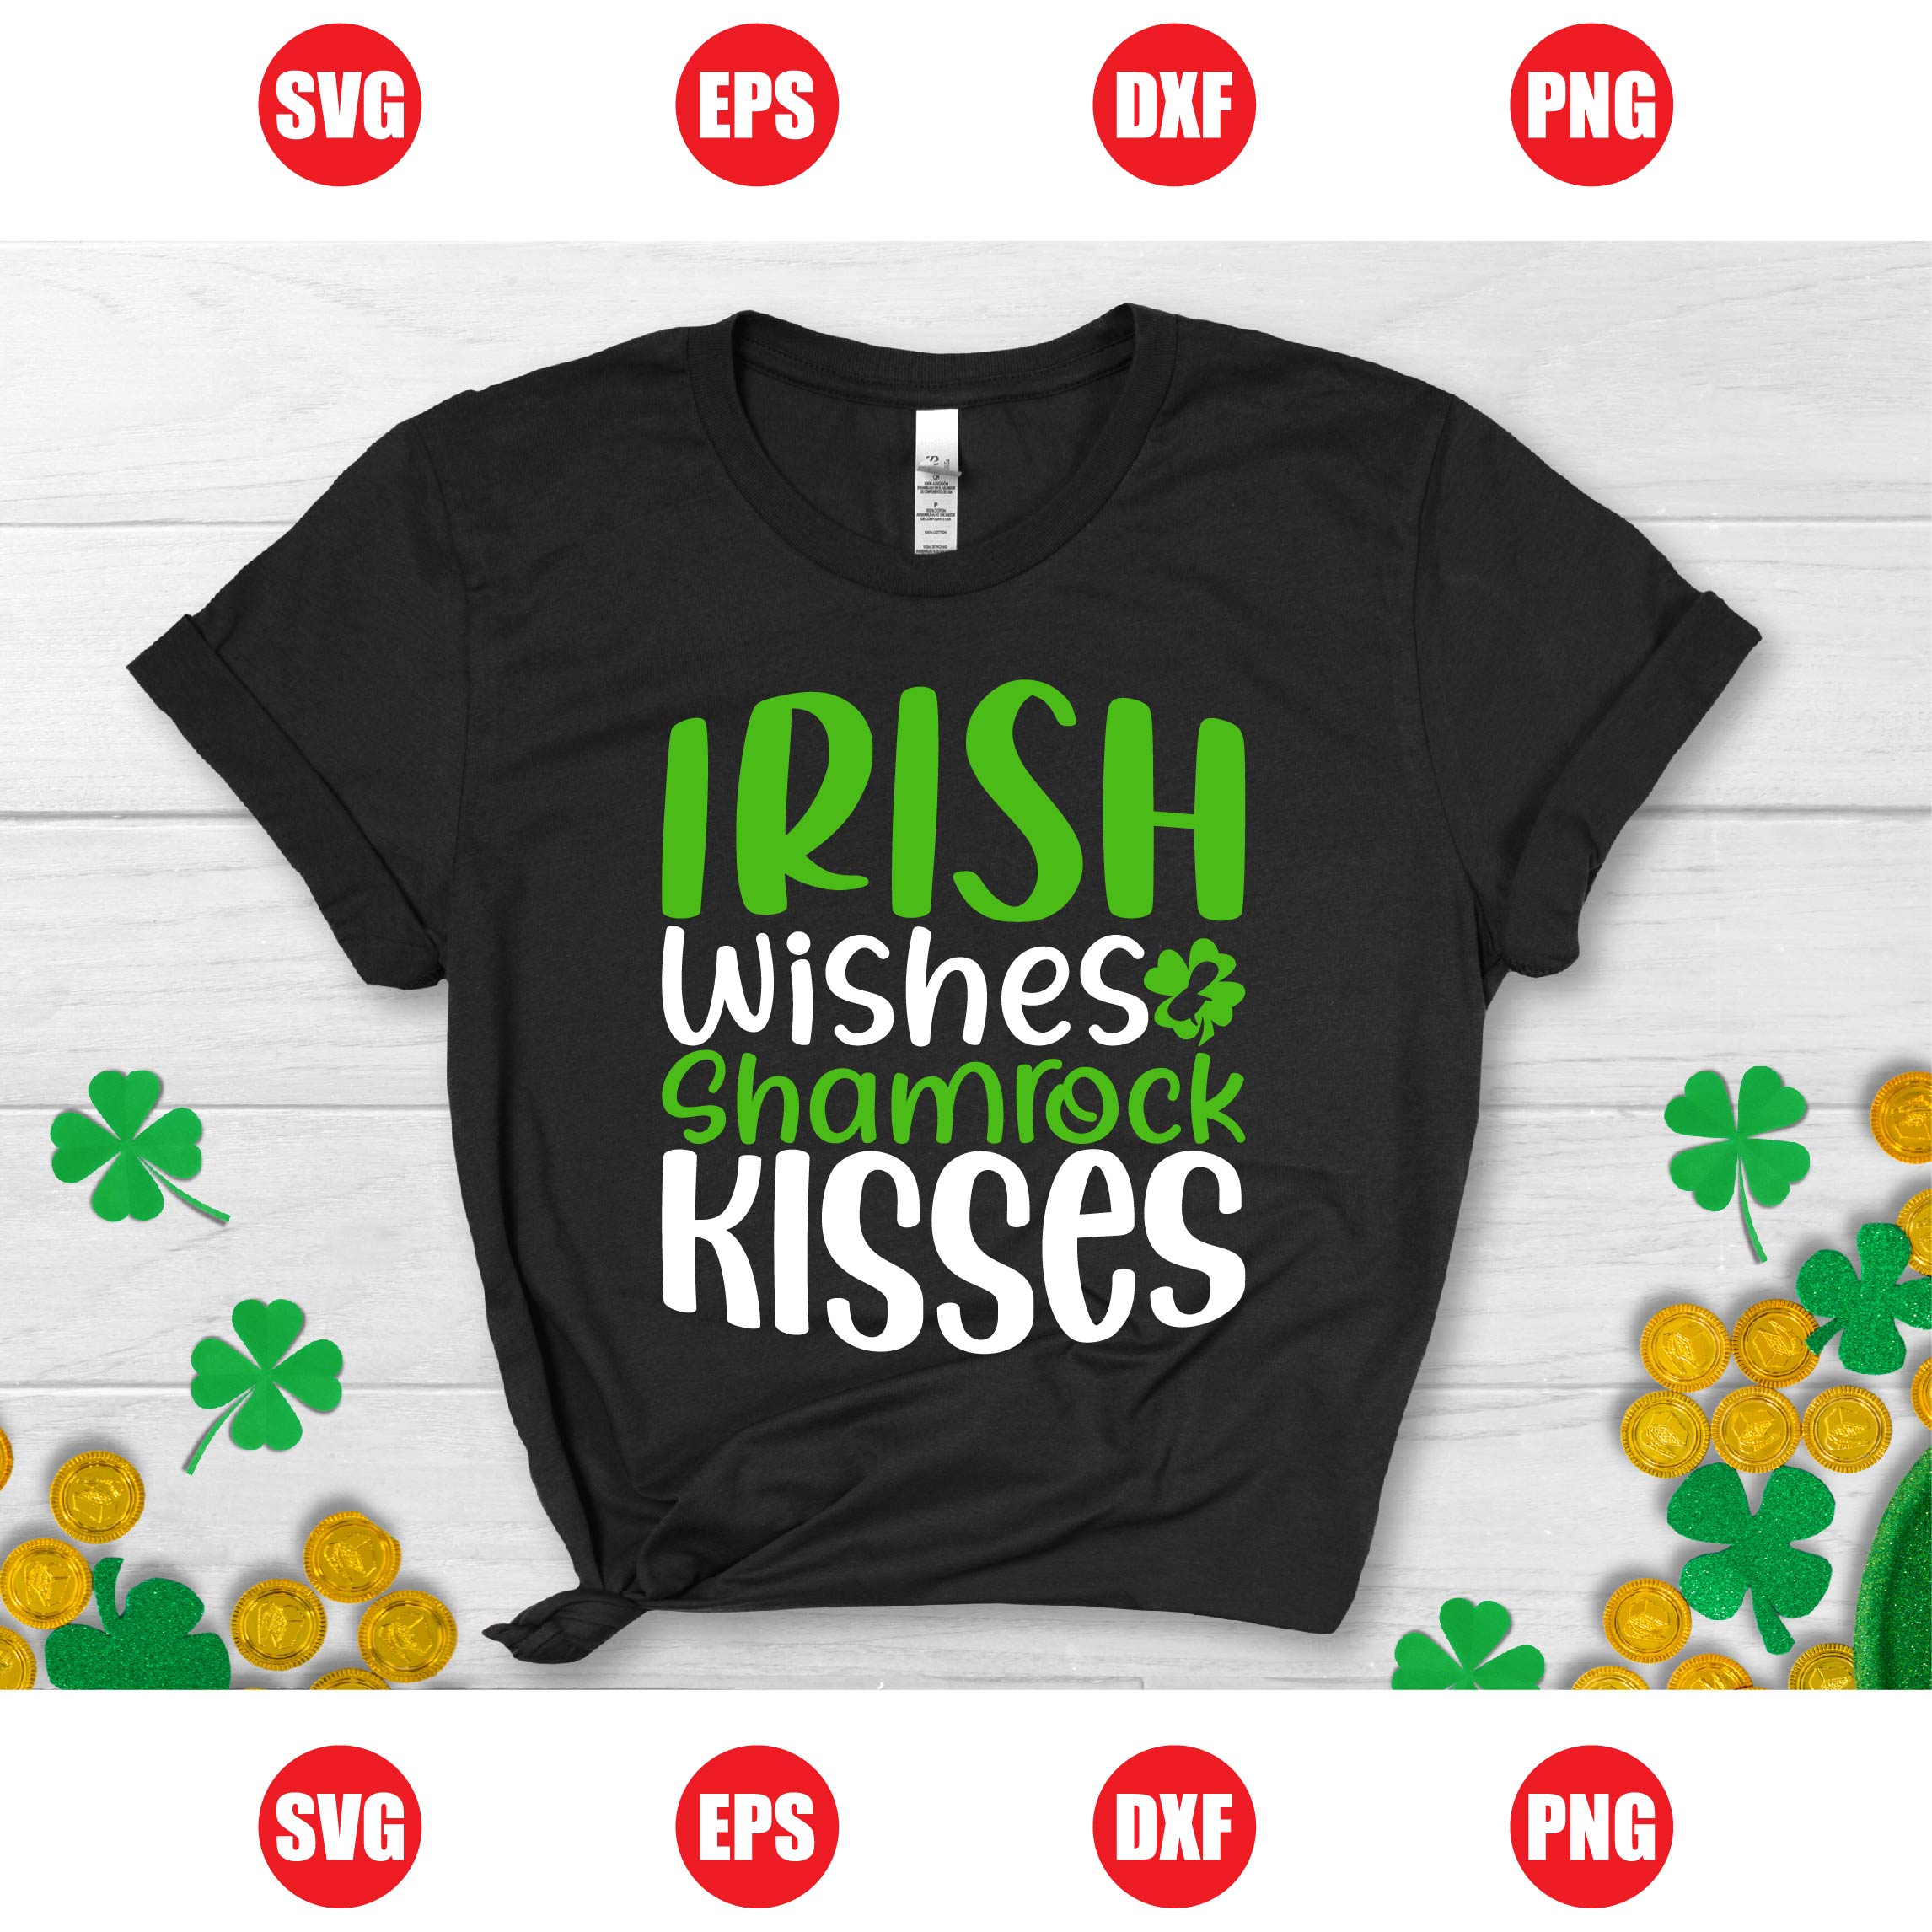 Irish Wishes & Shamrock Kisses T-shirt Design cover image.